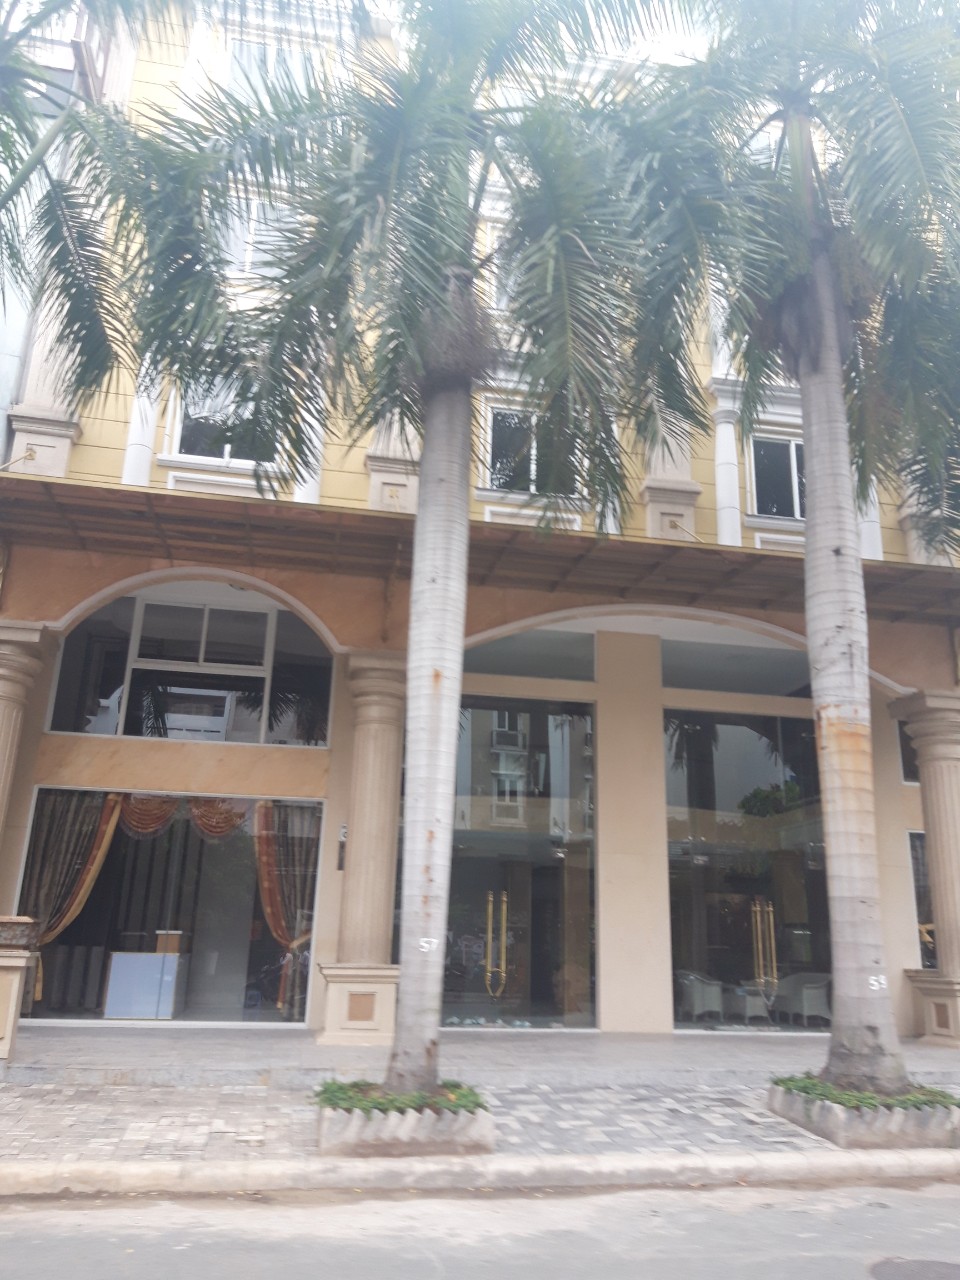 Cho thuê nhiều khách sạn tại Phú Mỹ Hưng, quận 7, TP HCM đang kinh doanh tốt LH: 0915 21 3434 PHONG.